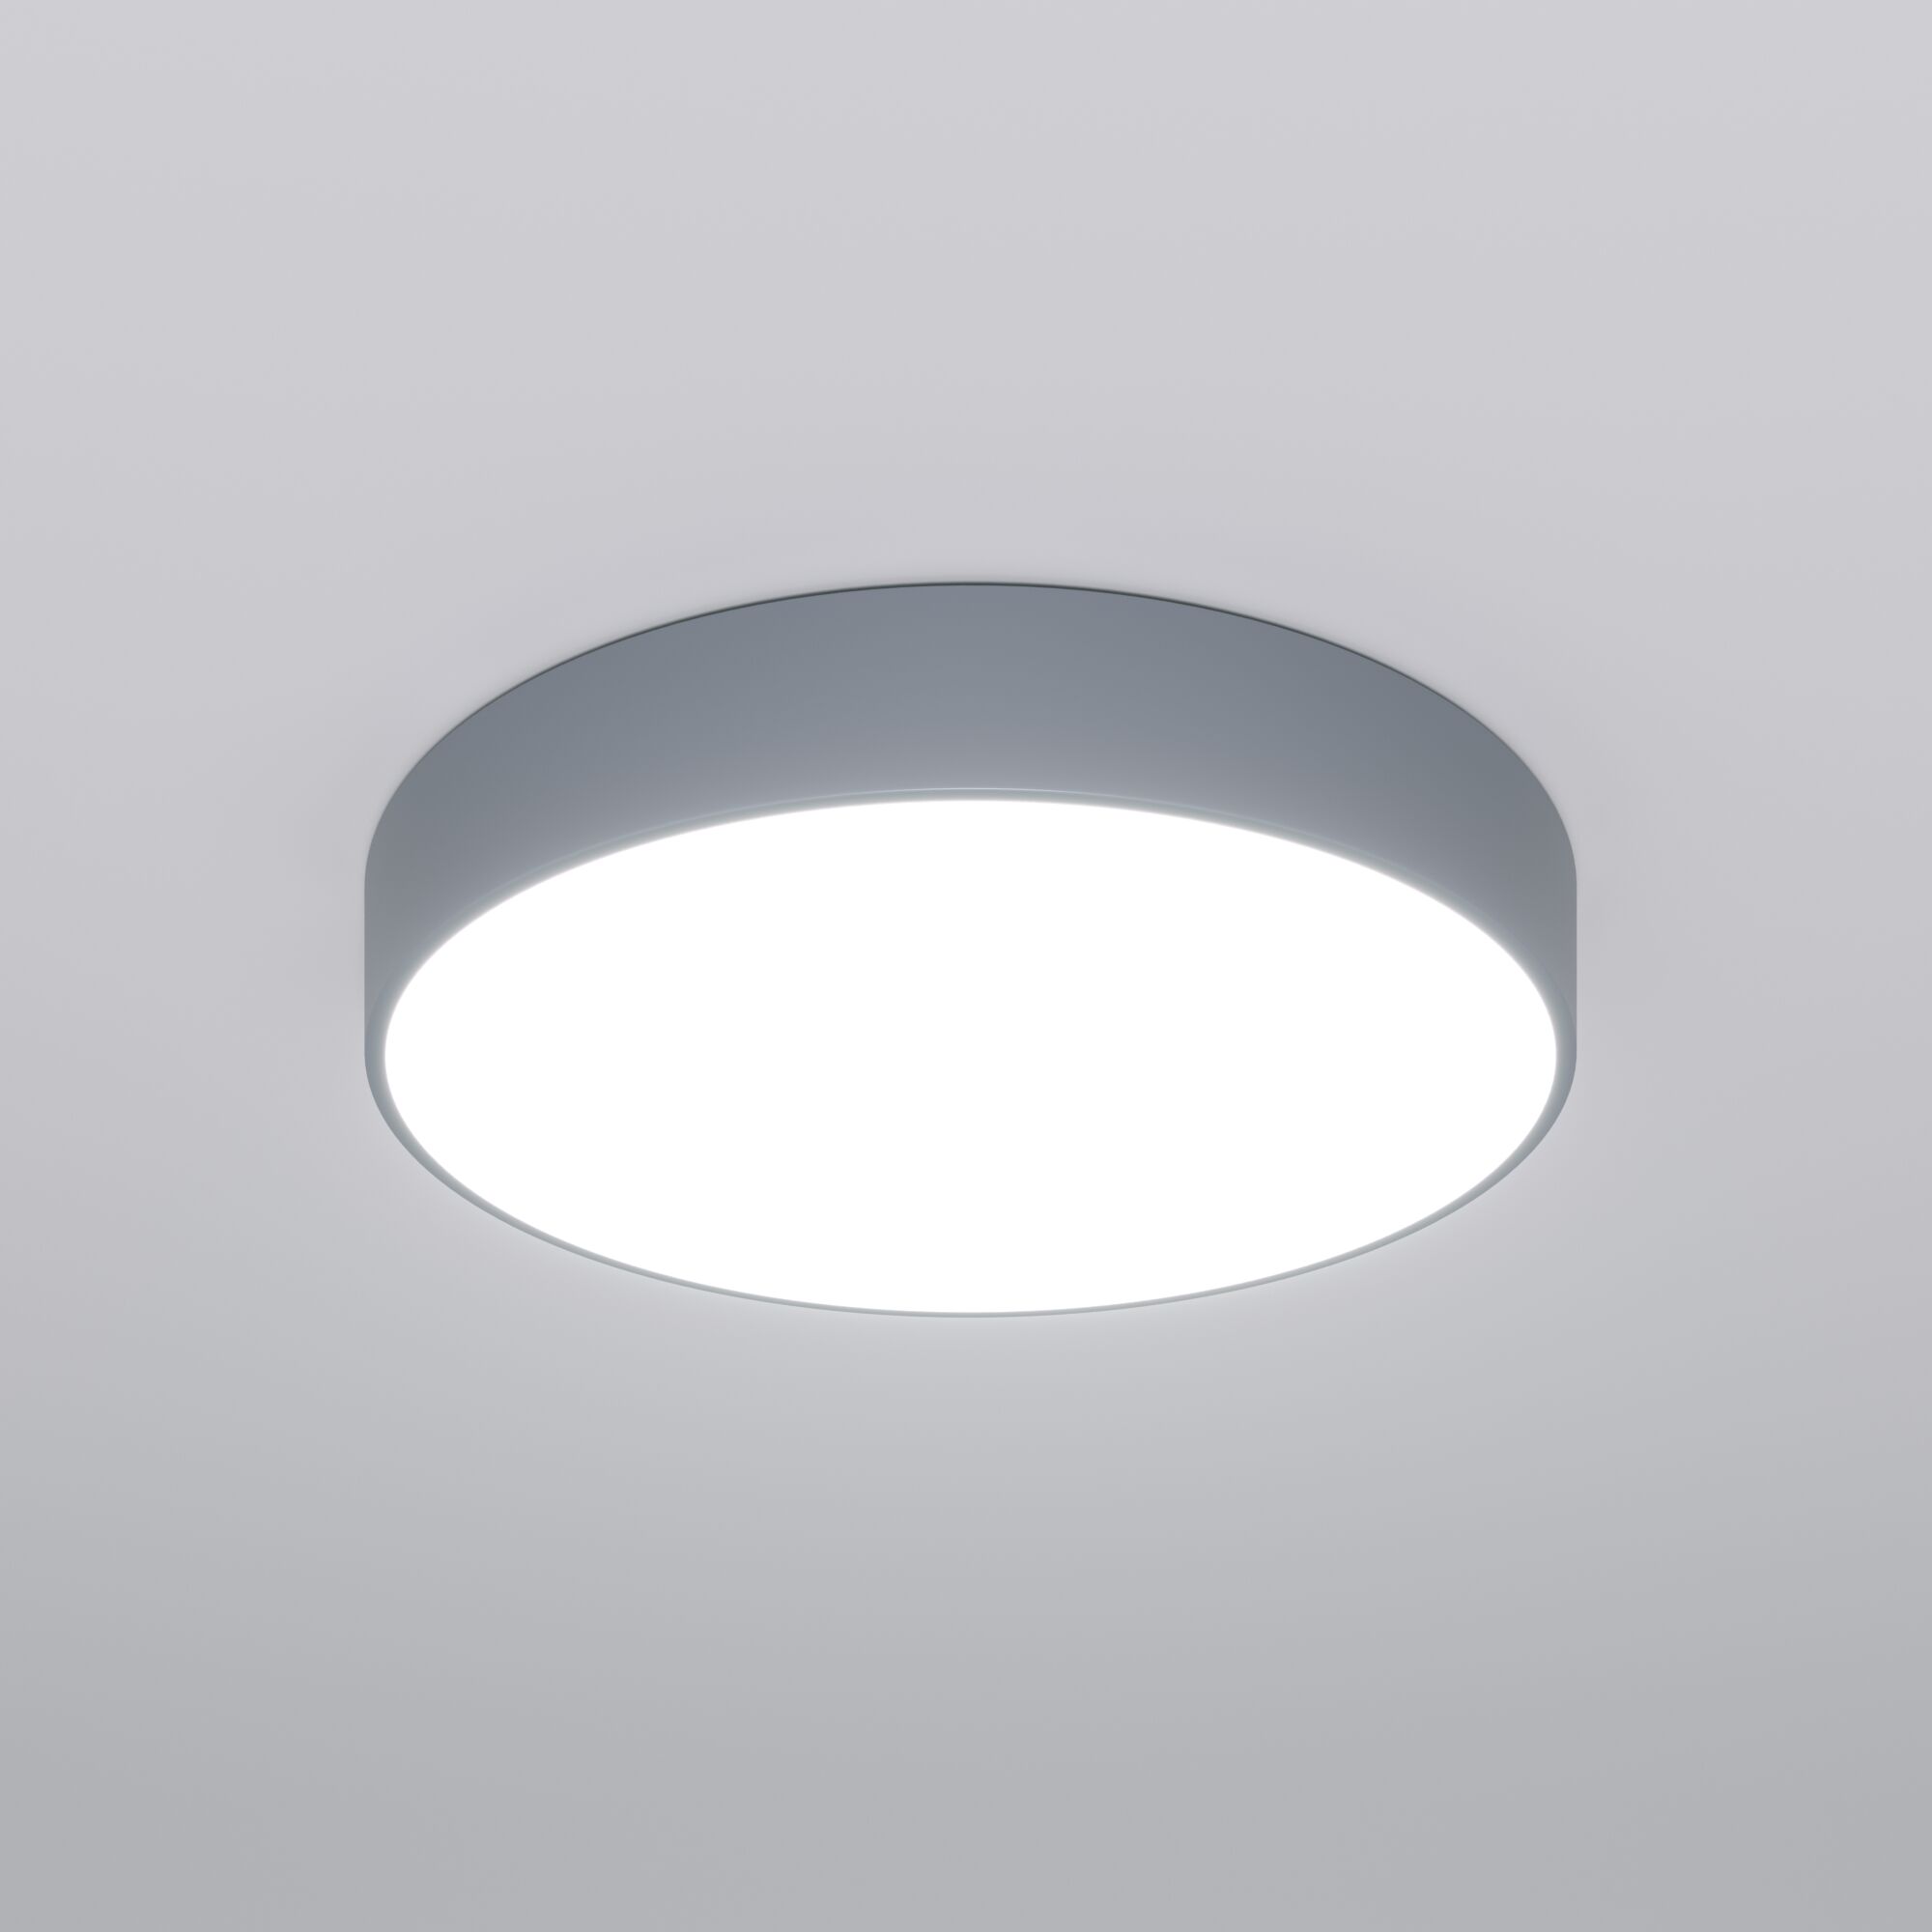 Потолочный светодиодный светильник с регулировкой яркости и цветовой температуры Eurosvet Entire 90319/1 серый. Фото 1